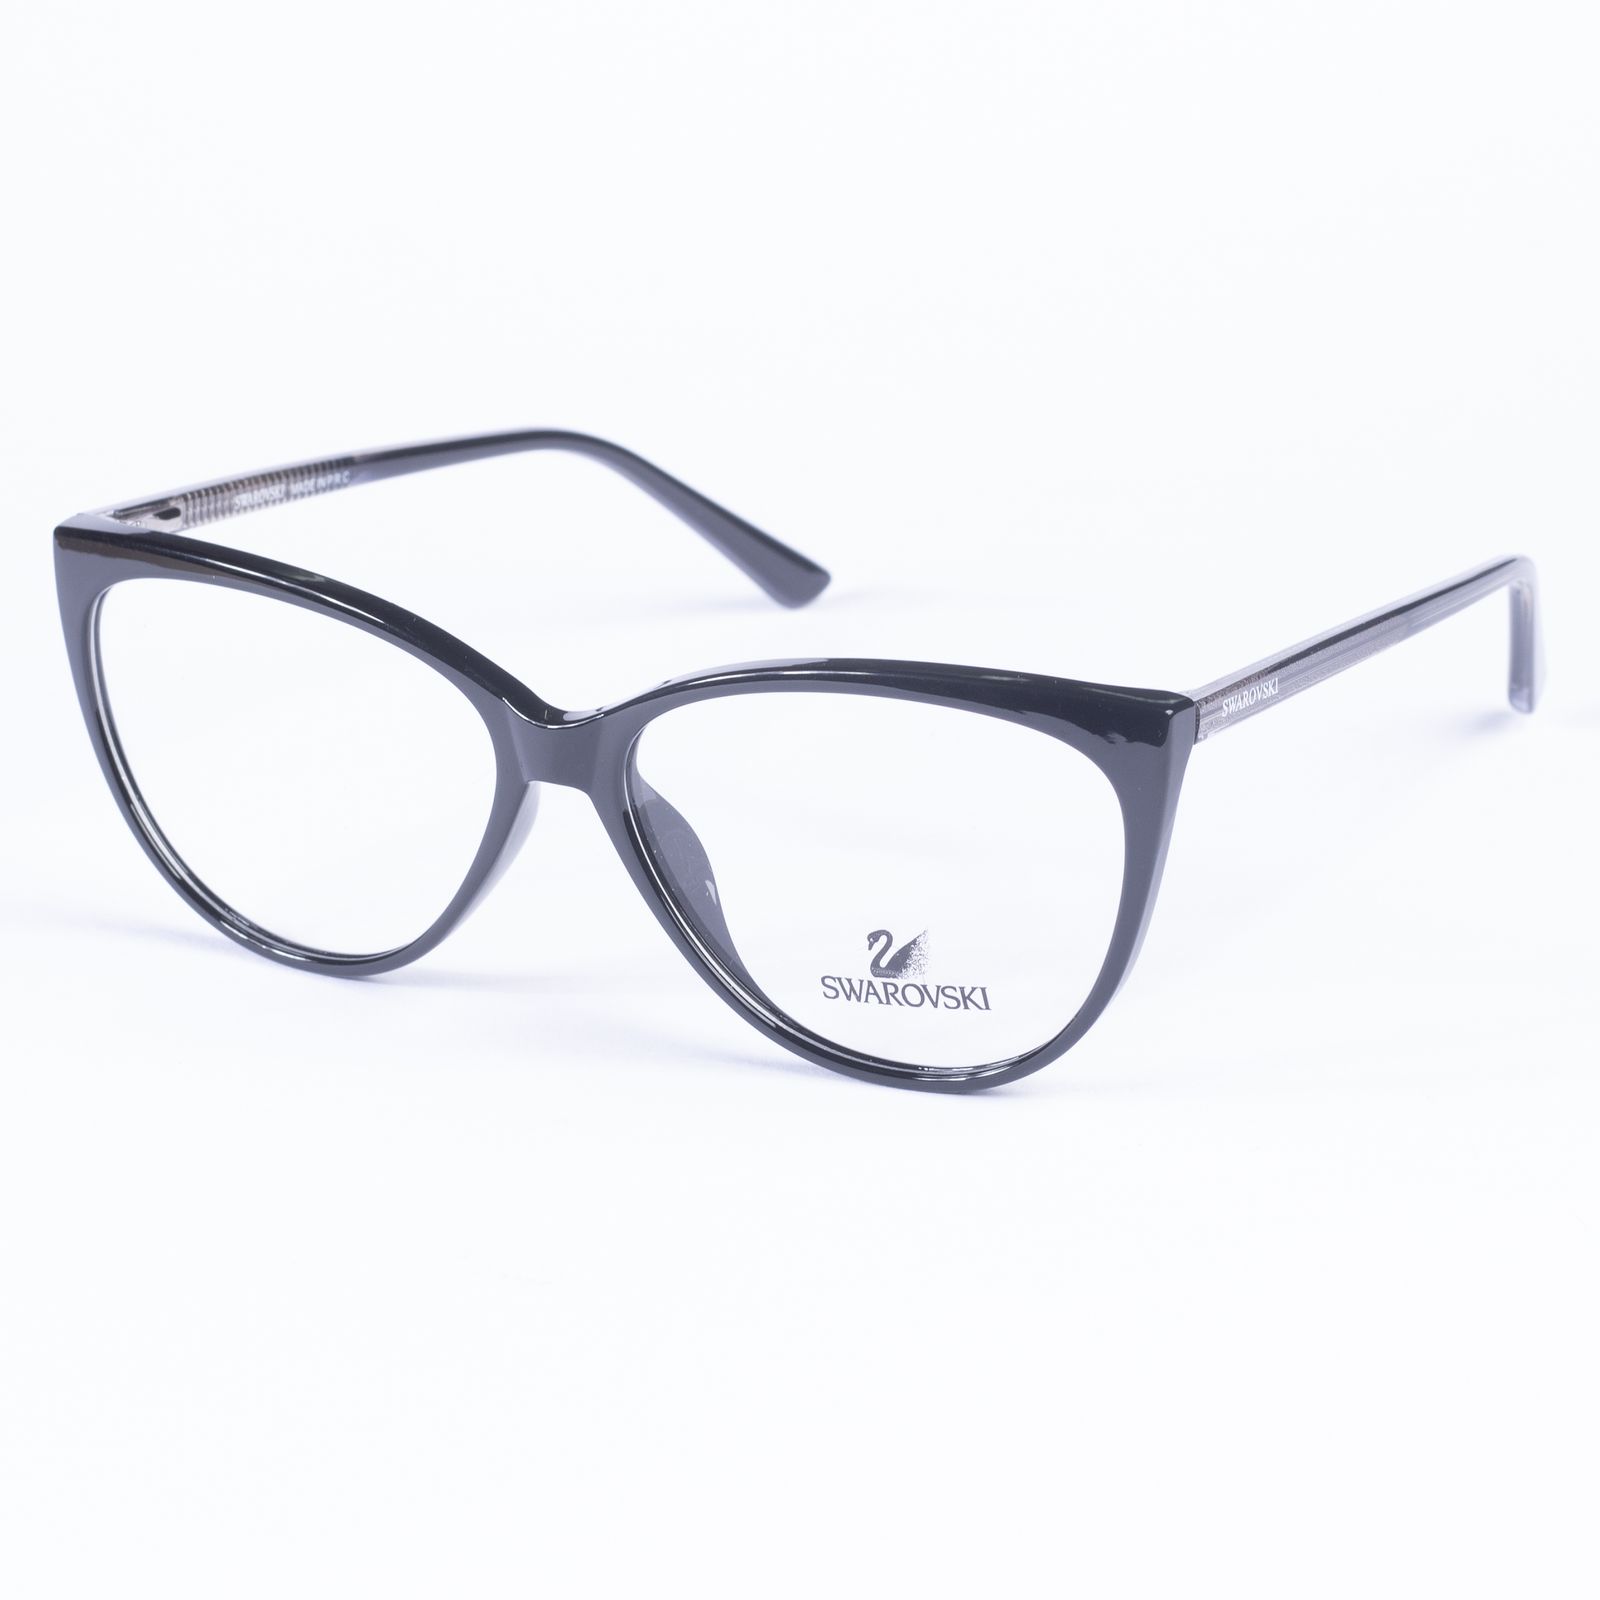 فریم عینک طبی زنانه سواروسکی مدل SW2021 -  - 2